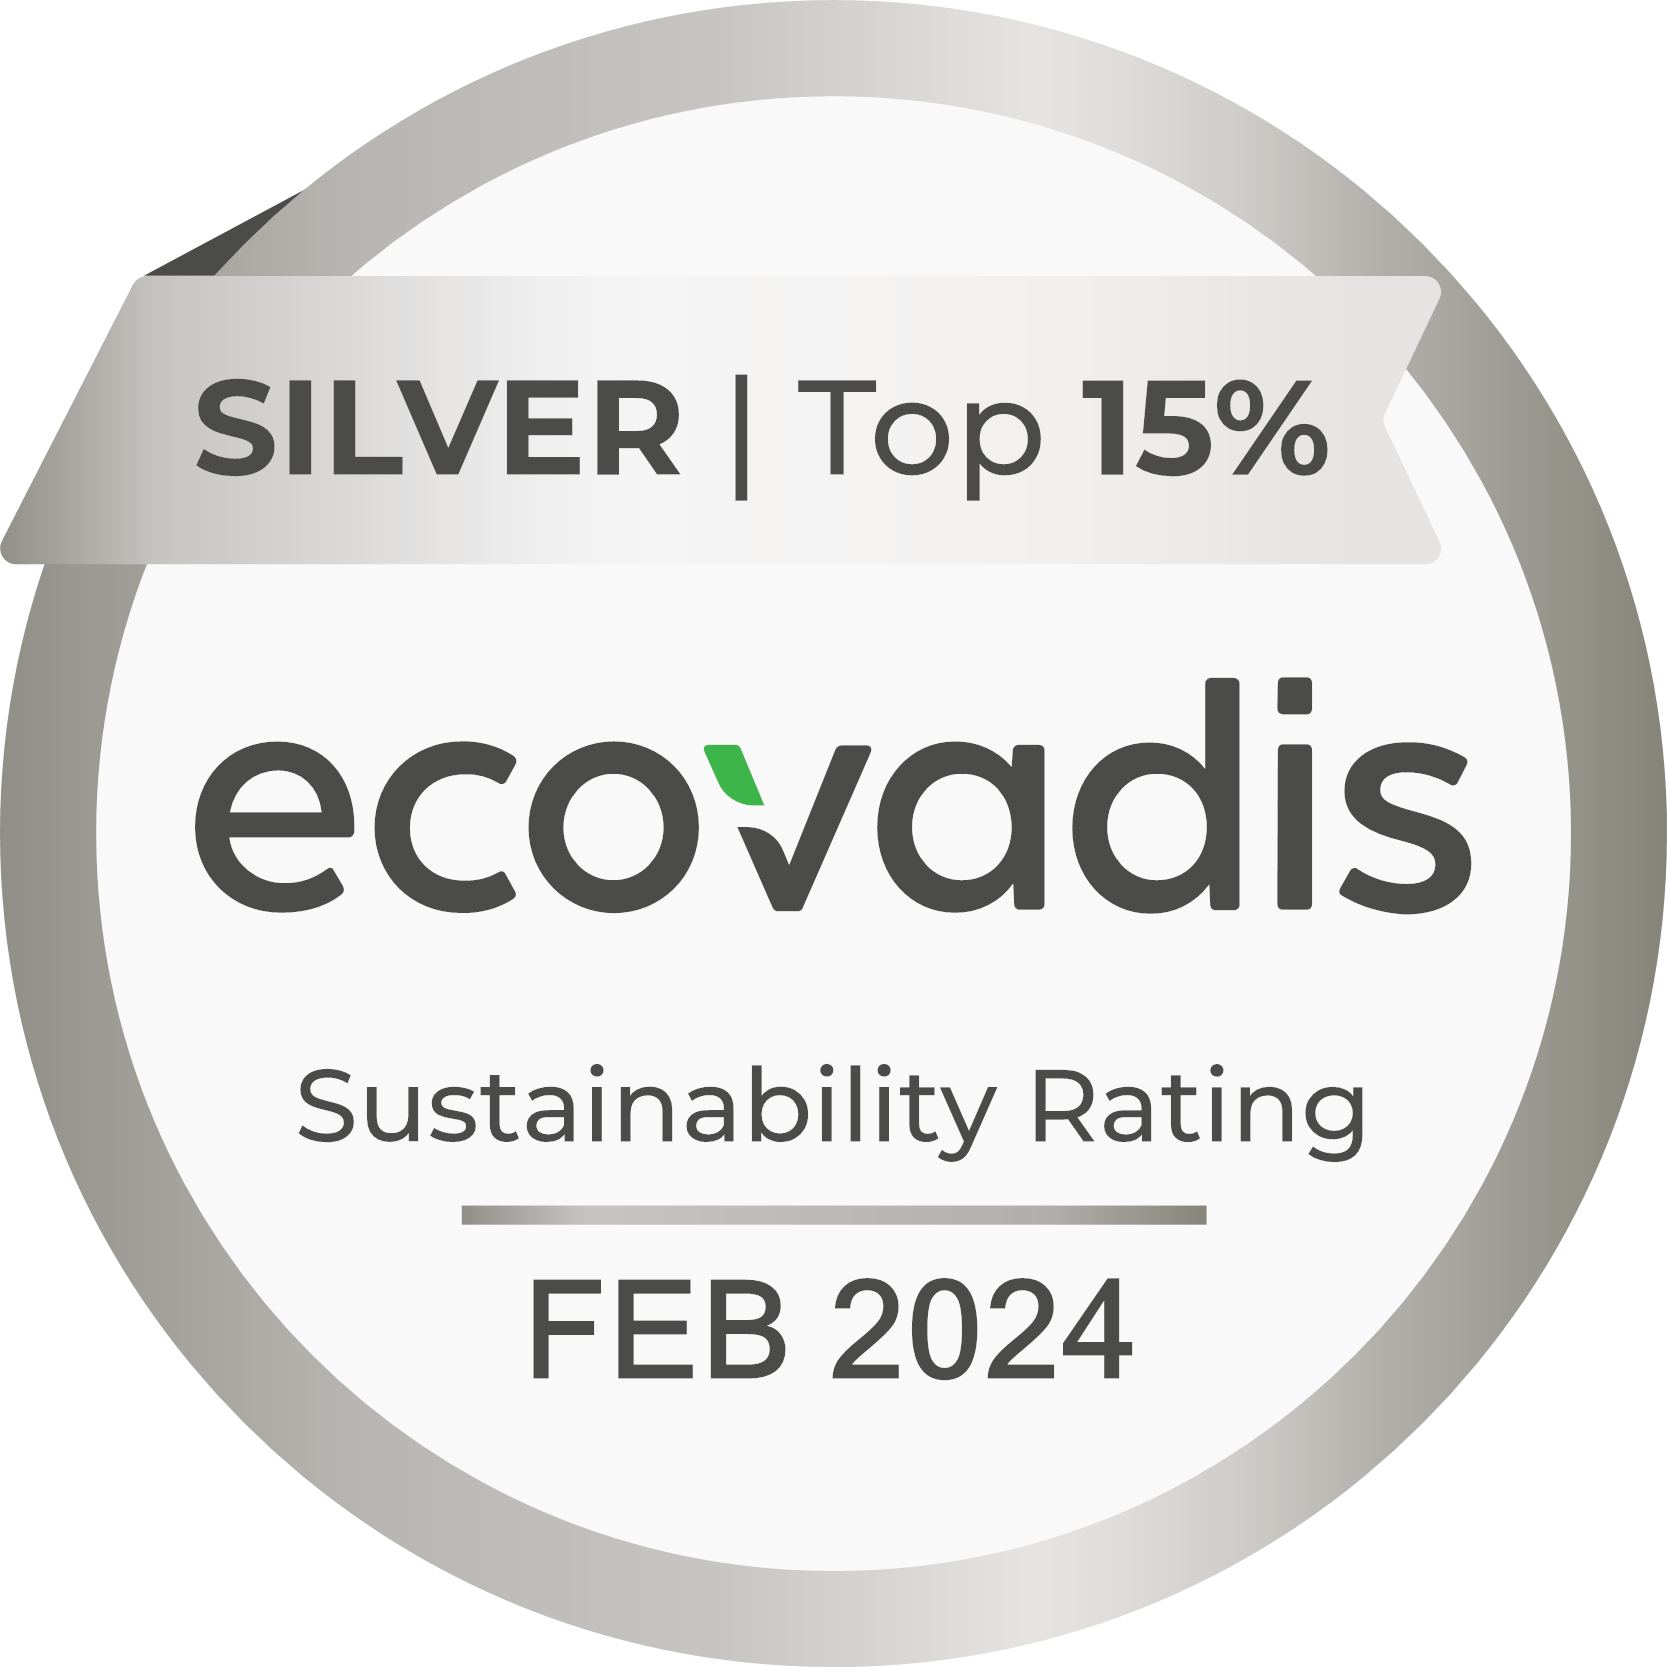 Medaglia Silver nel rating Ecovadis per Coopservice